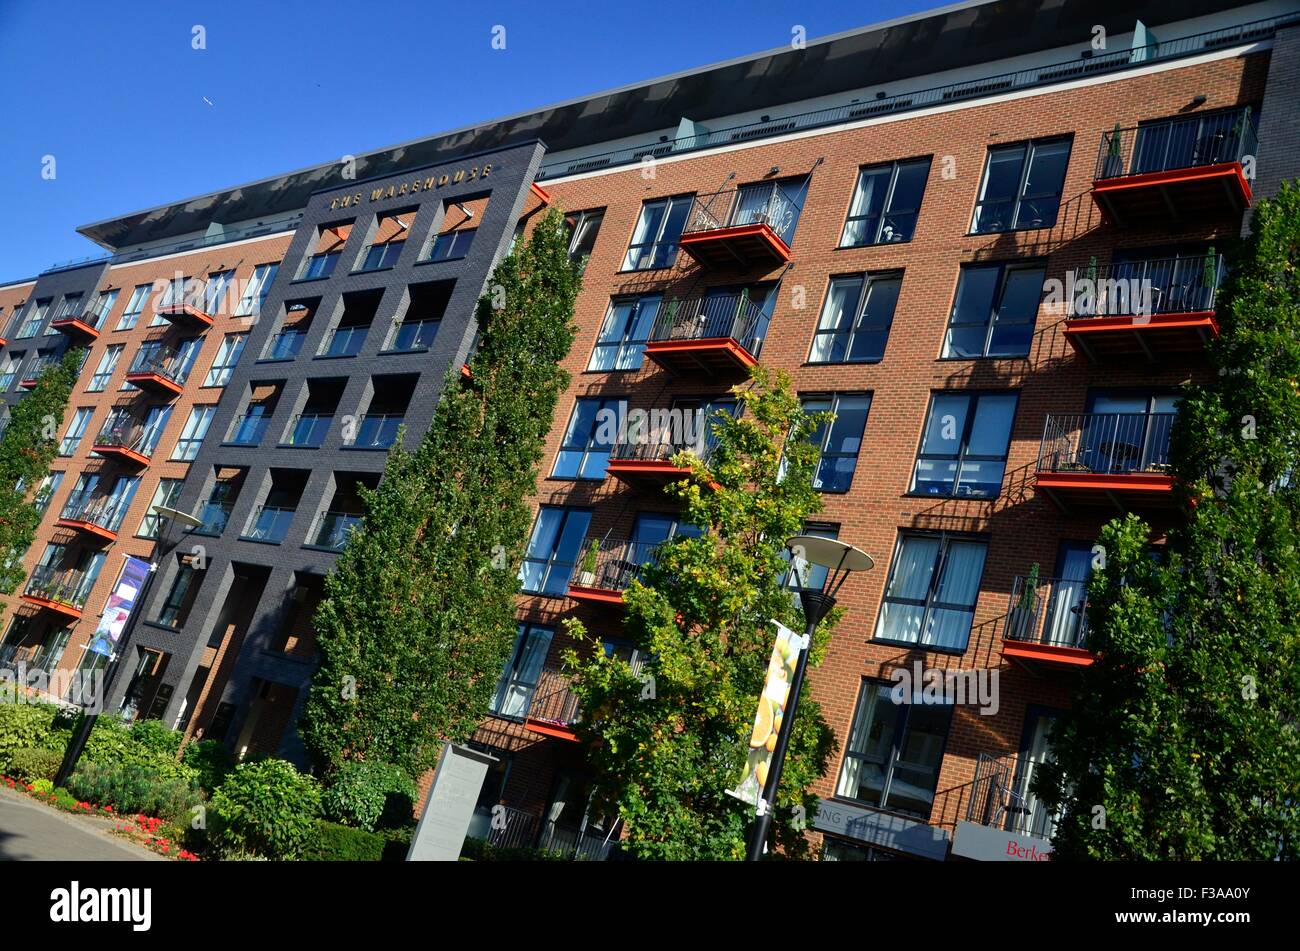 Les appartements de l'Arsenal royal de Woolwich de développement, Londres, Angleterre, Royaume-Uni Banque D'Images